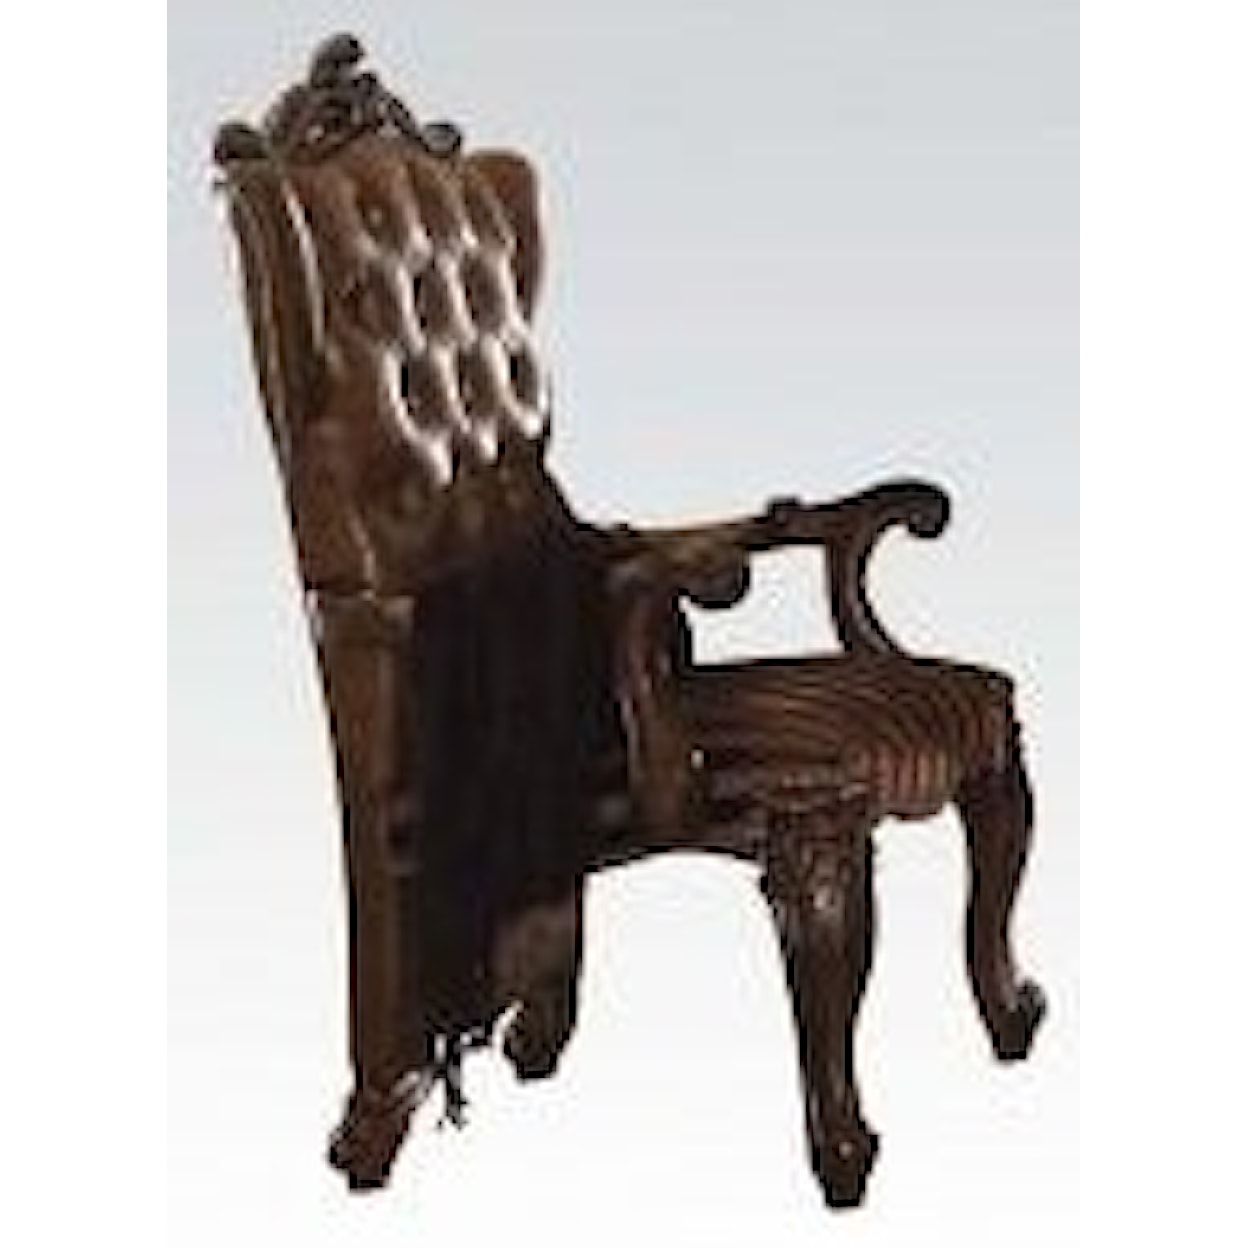 Acme Furniture Versailles Arm Chair